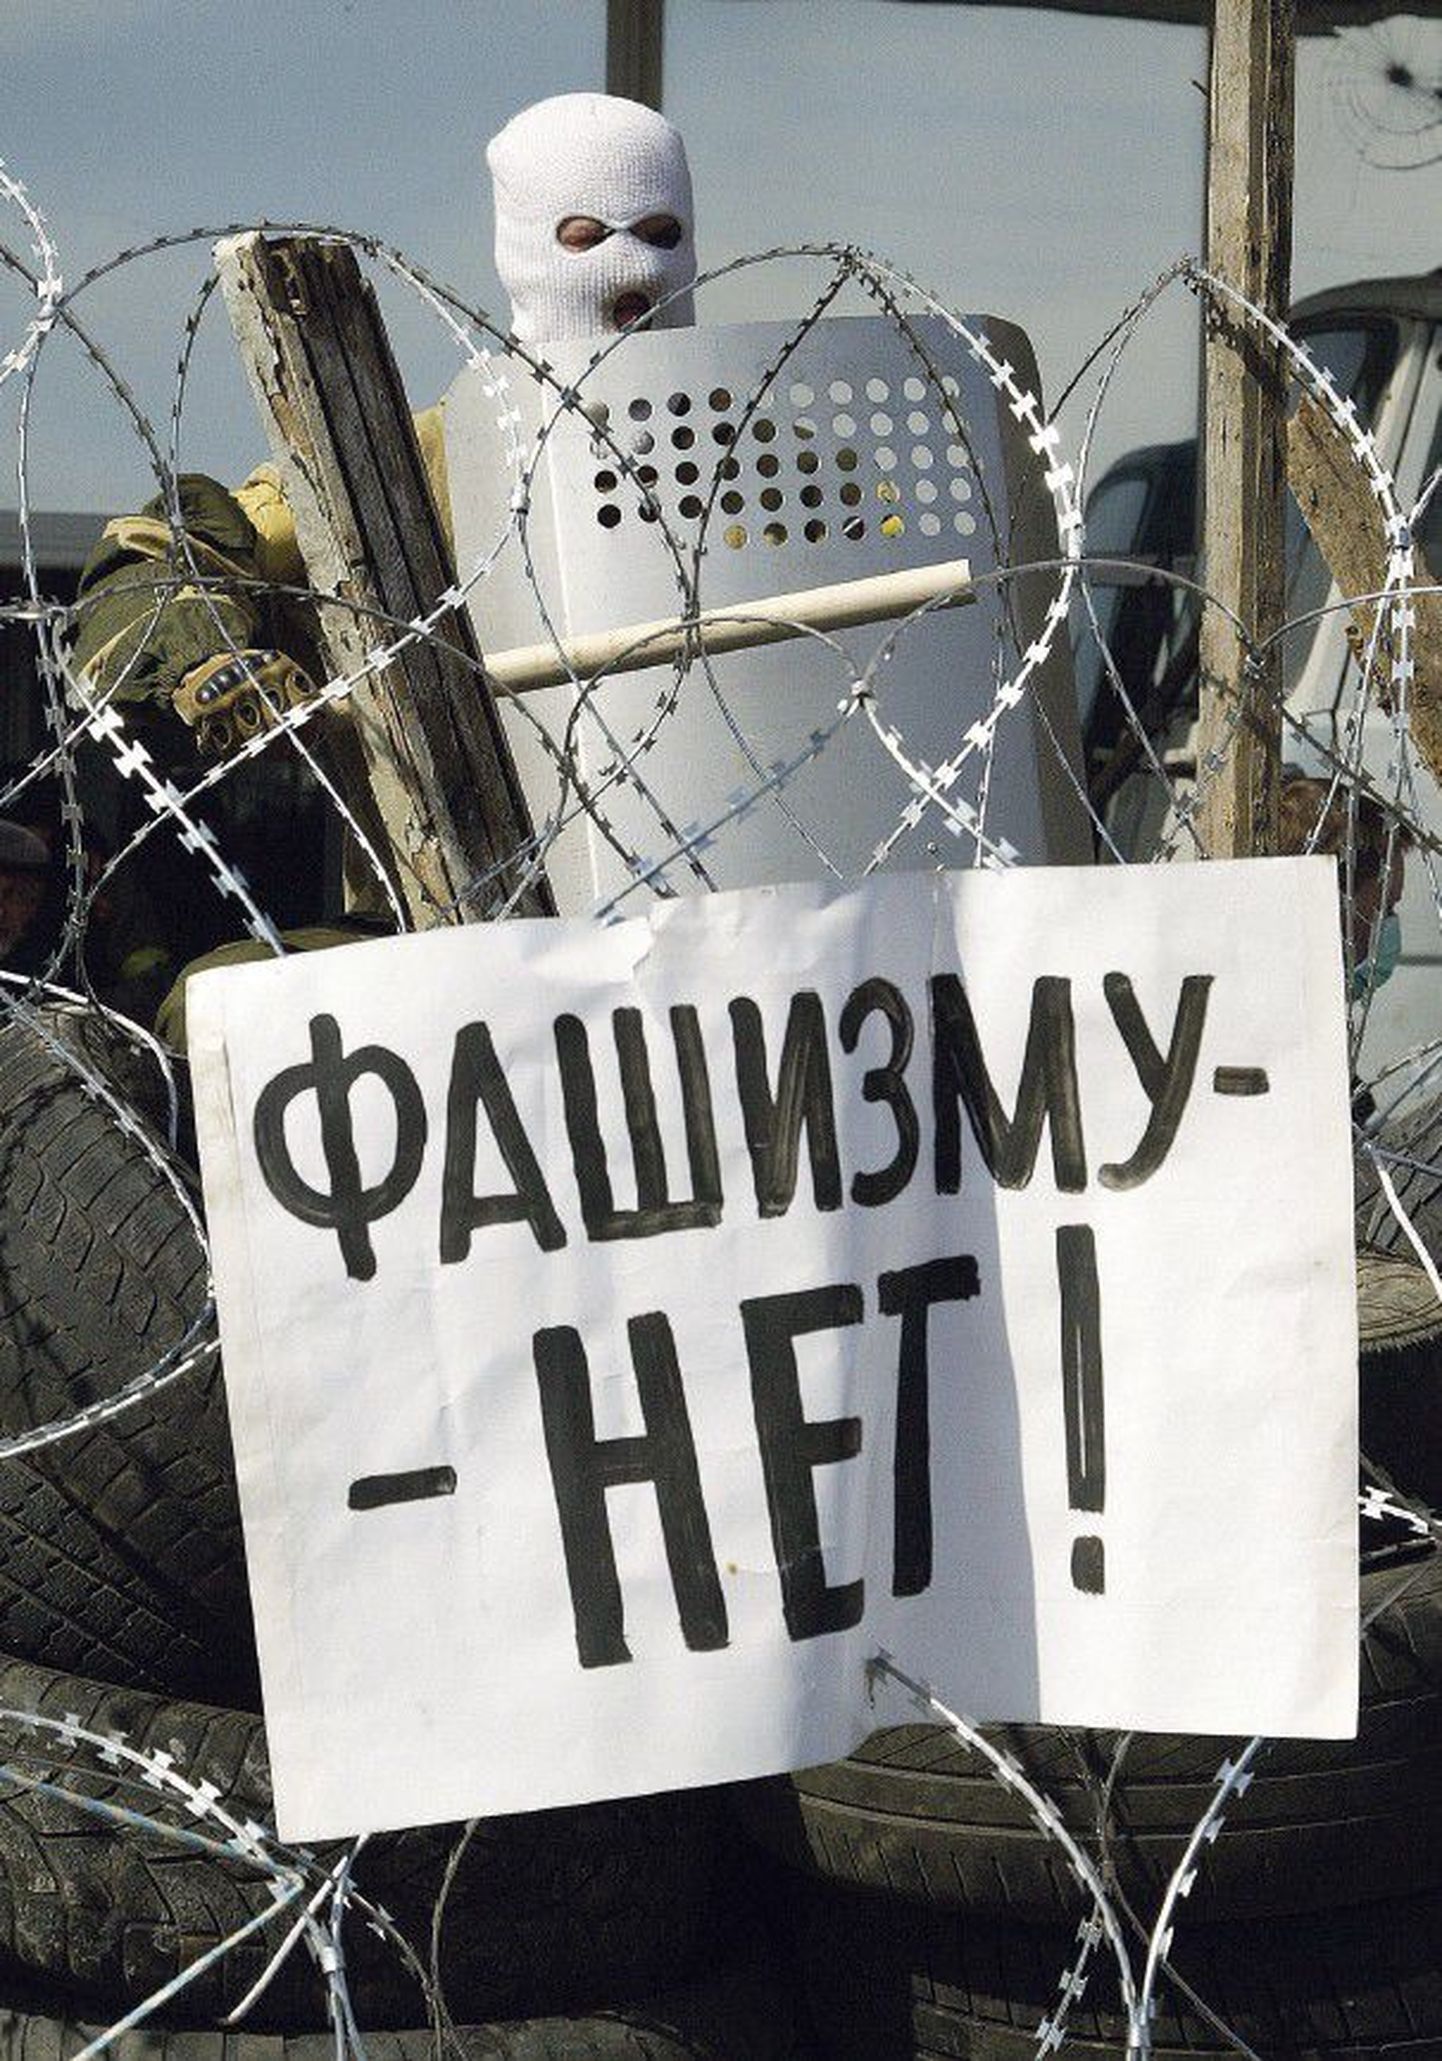 «Fašismile ei!» teatab vene võitlejate loosung Donetski barrikaadil. See, et Ukrainas on võimul fašistid, on narratiiv, mida Moskva on kogu konflikti vältel usinalt toitnud.